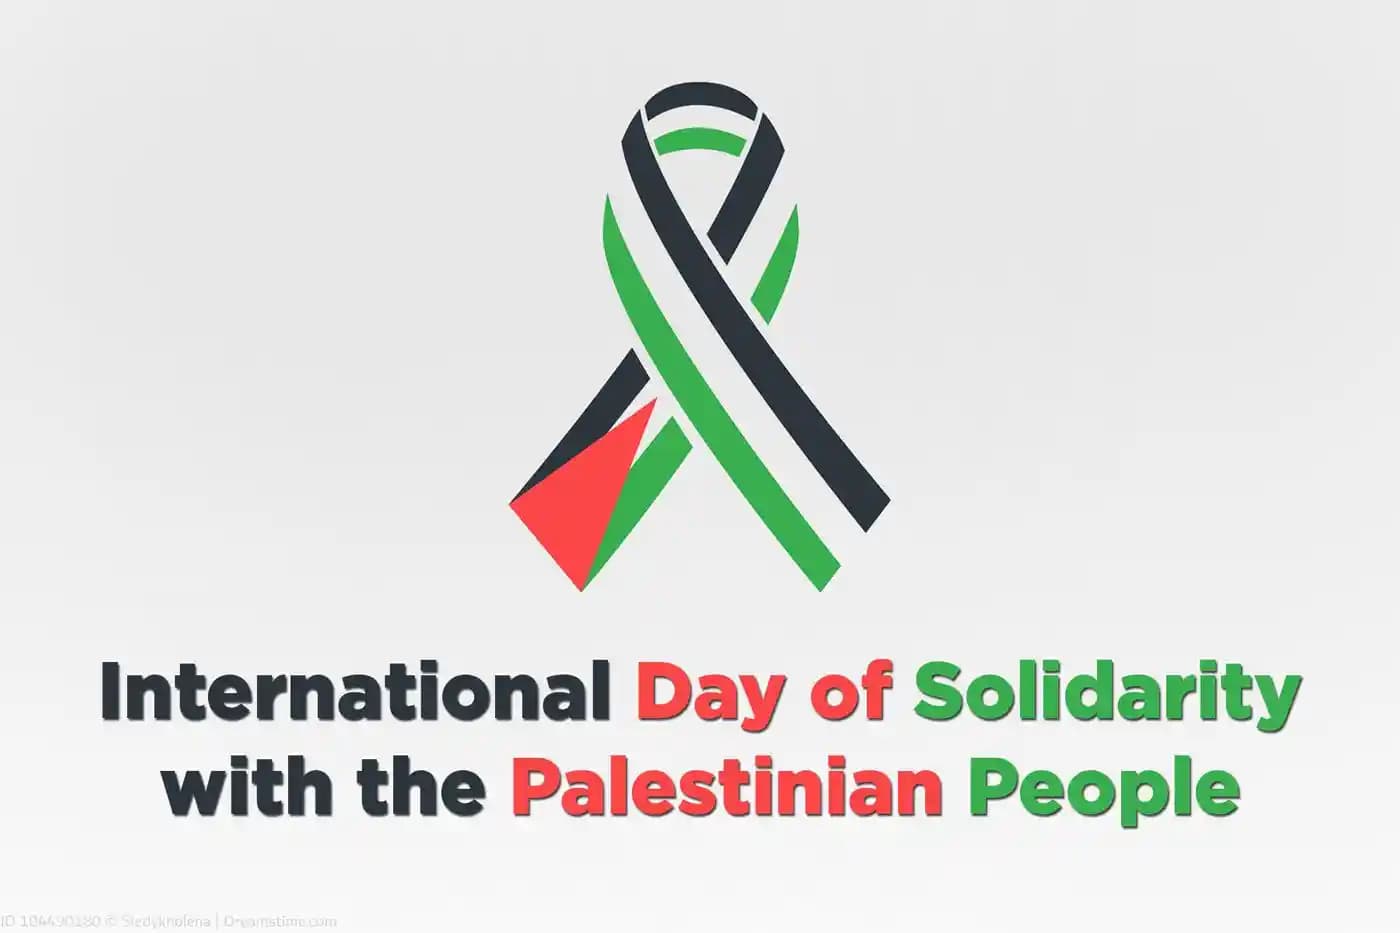 फिलीस्तीनी लोगों के साथ एकजुटता का अंतर्राष्ट्रीय दिवस